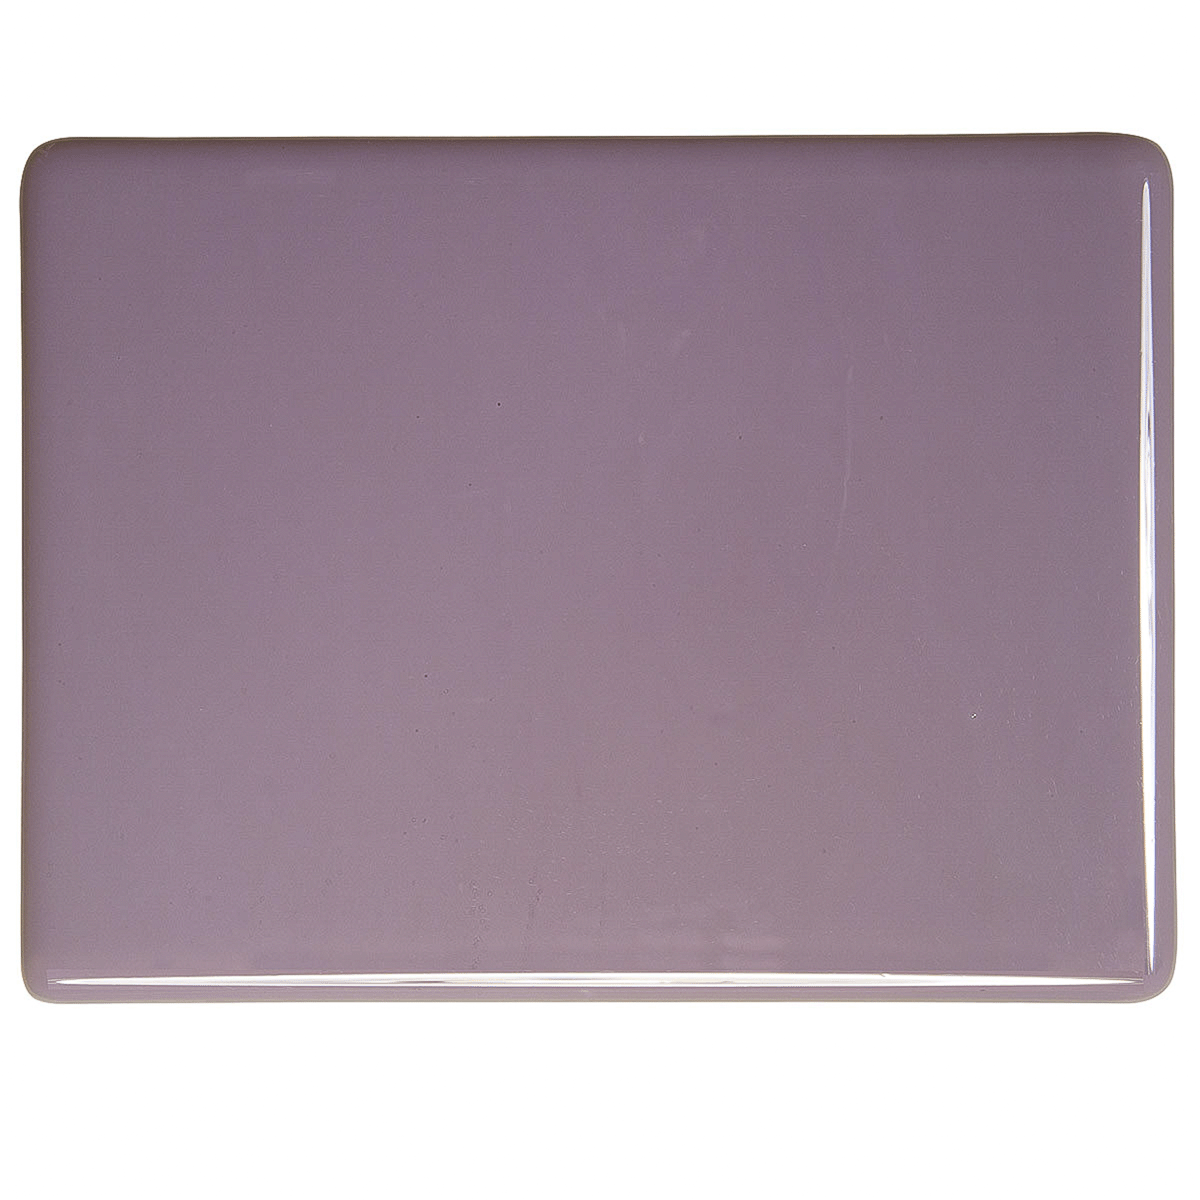 Dusty Lilac, 2mm